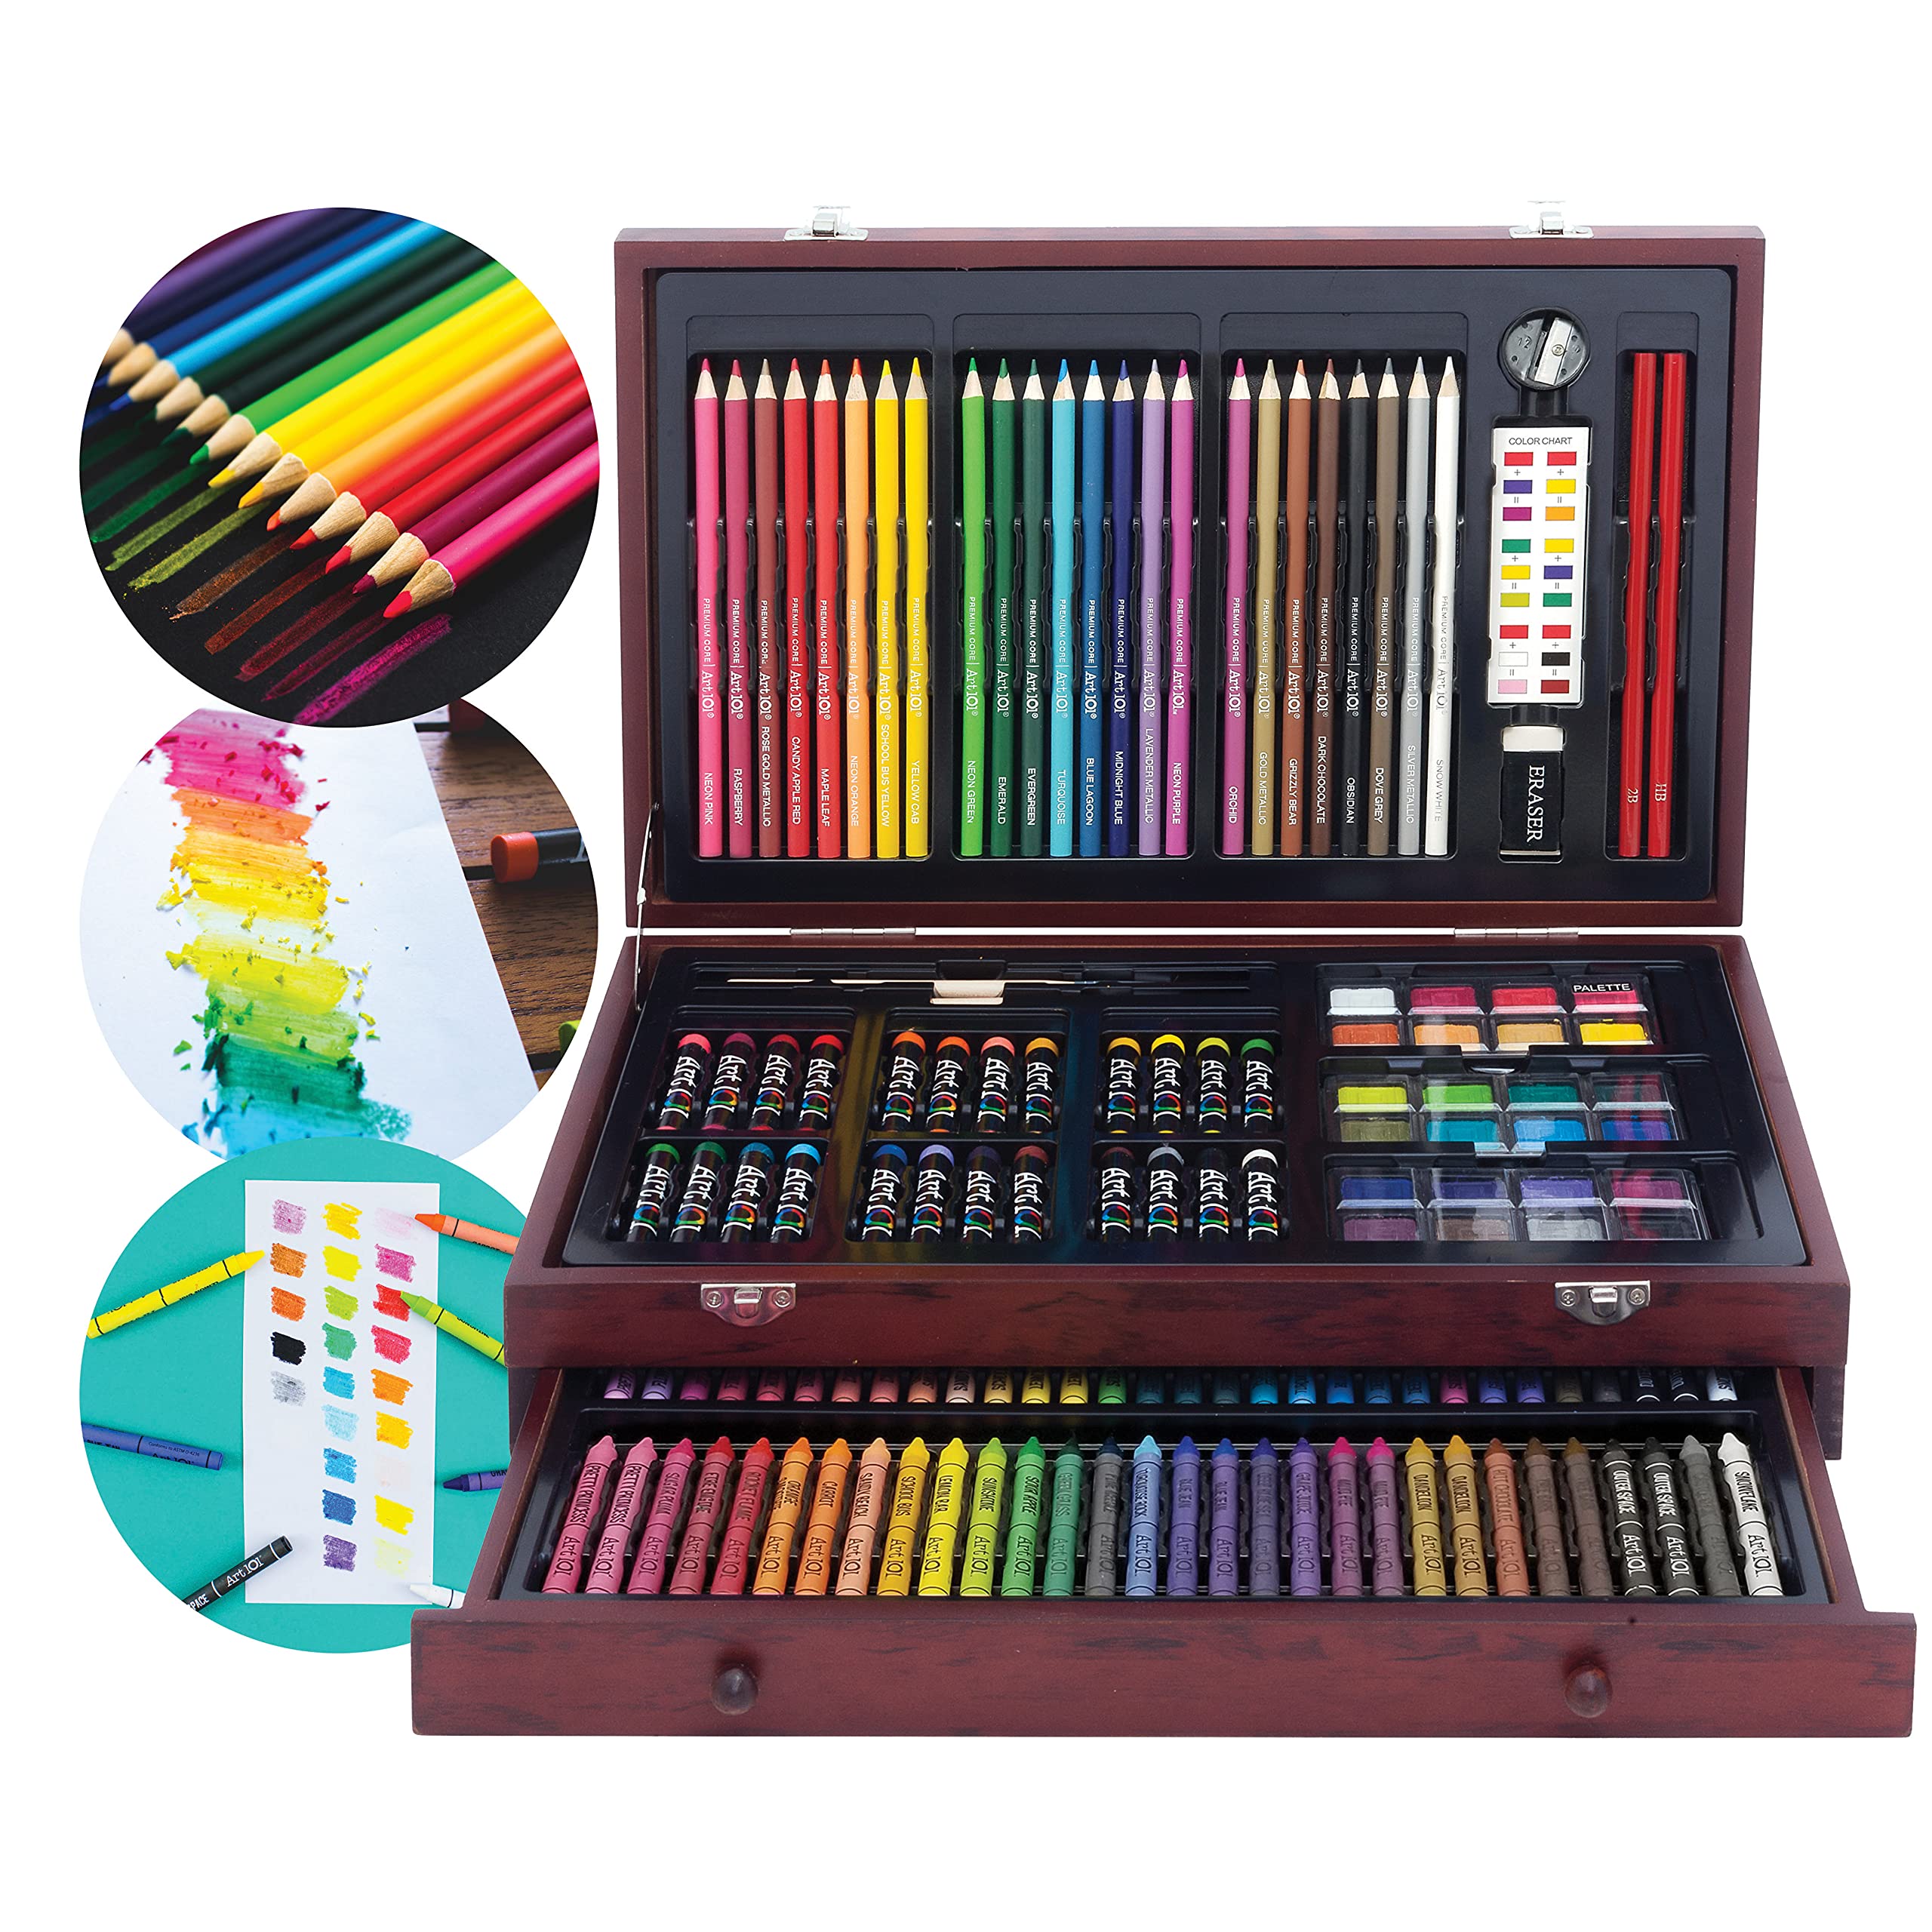 Bộ vẽ Art 101 Doodle and Color là sự lựa chọn hoàn hảo cho những người yêu thích vẽ doodle art và muốn tạo ra những tác phẩm đa dạng và độc đáo hơn. Bên cạnh đó, bộ vẽ cũng giúp trẻ em tập trung hơn và phát triển khả năng sáng tạo. Hãy tham khảo hình ảnh bộ vẽ Art 101 Doodle and Color để biết thêm chi tiết!